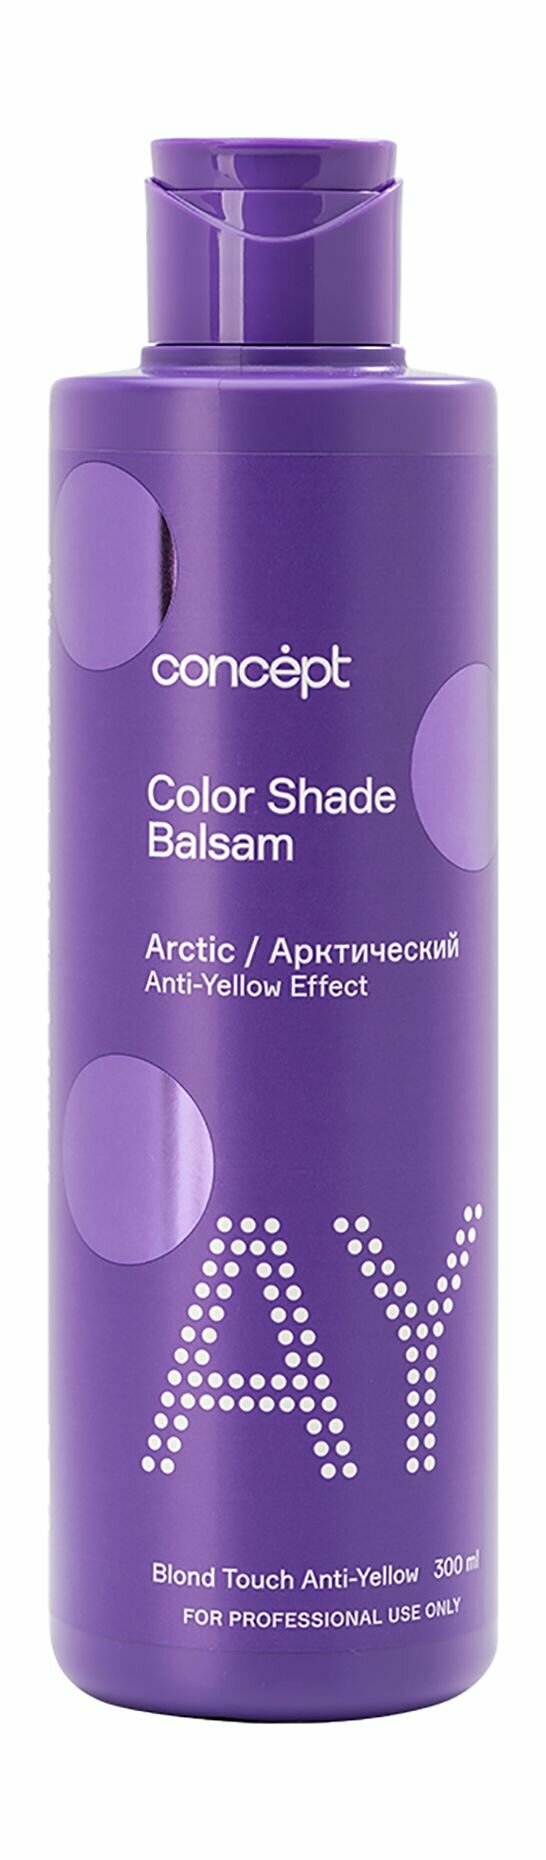 Оттеночный бальзам для волос с эффектом арктического блонда в обновленном дизайне / Concept Anti-Yellow Effect Arctic Color Shade Balsam